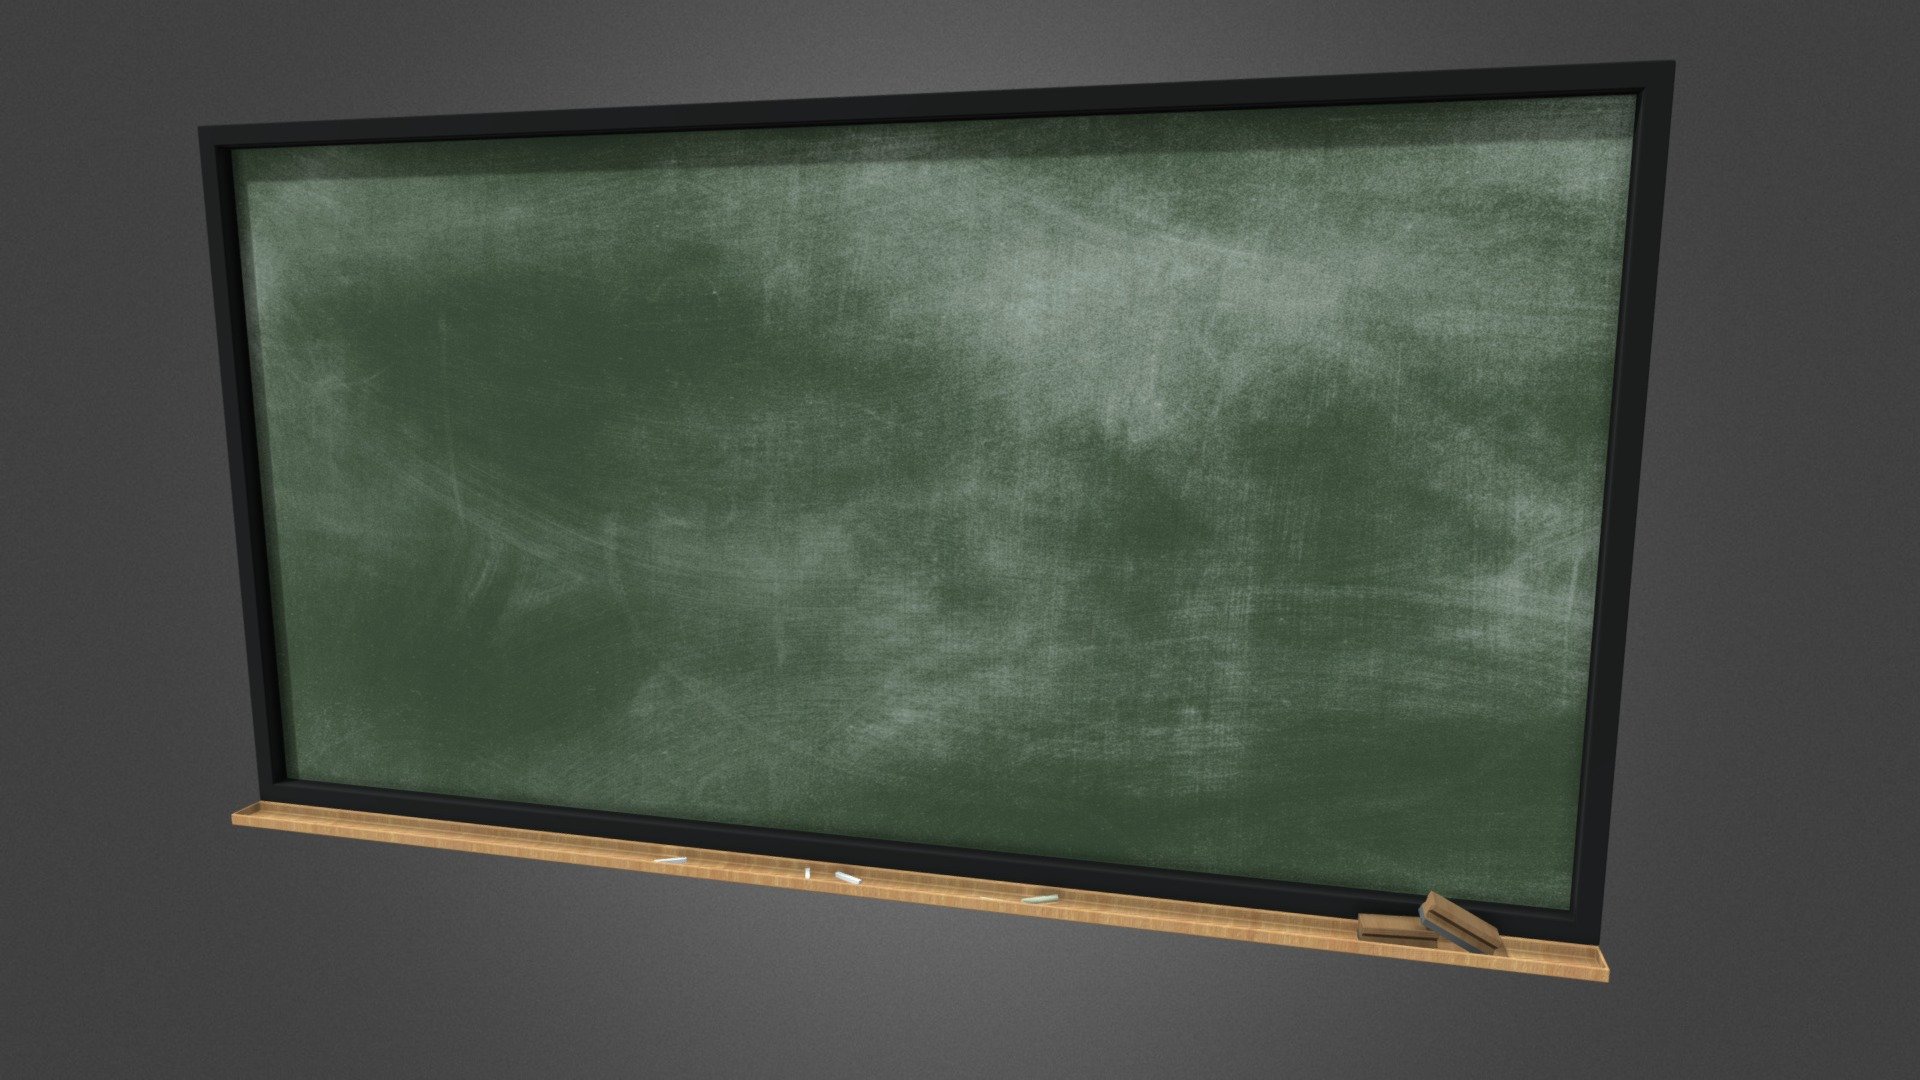 Lowpoly green school board made in blender - Green board - 3D model by Rodri (@rodrigodelpozo99) 3d model